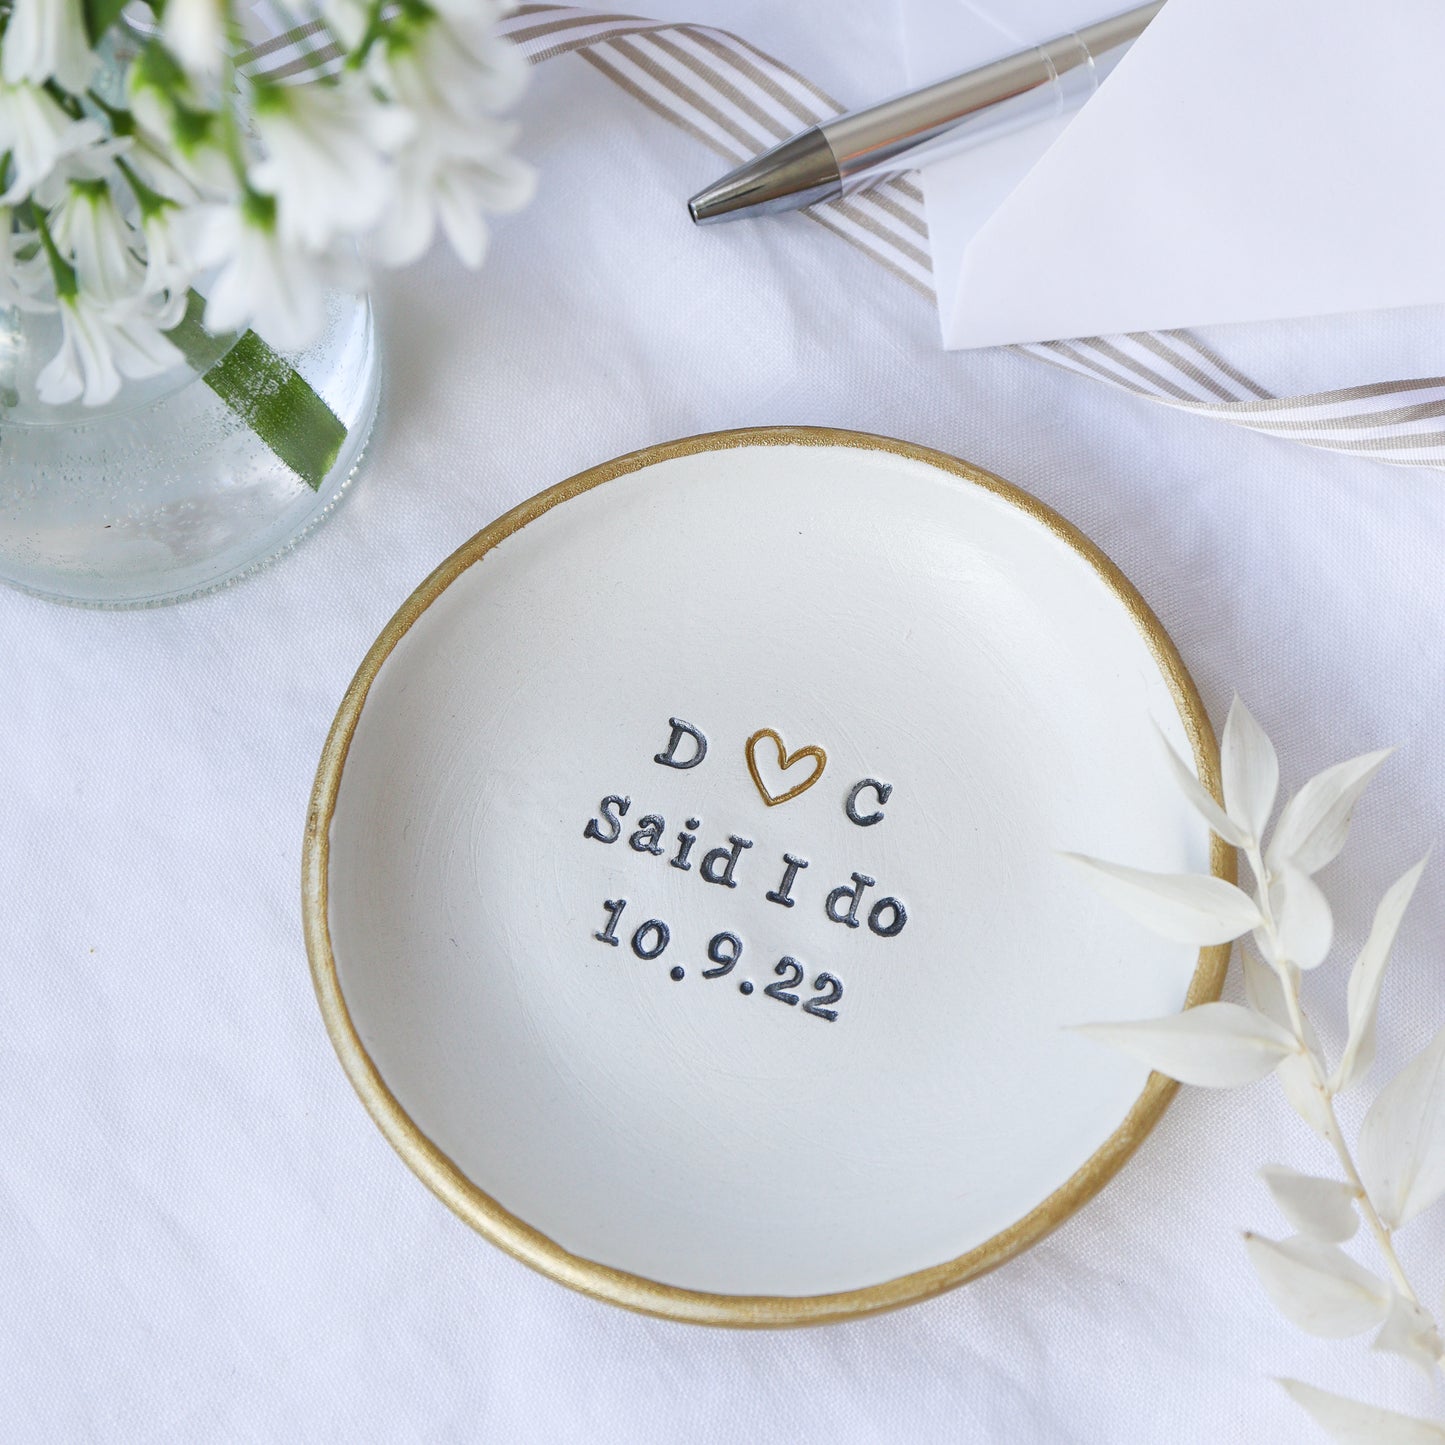 Personalised wedding keepsake 'I do' dish with date